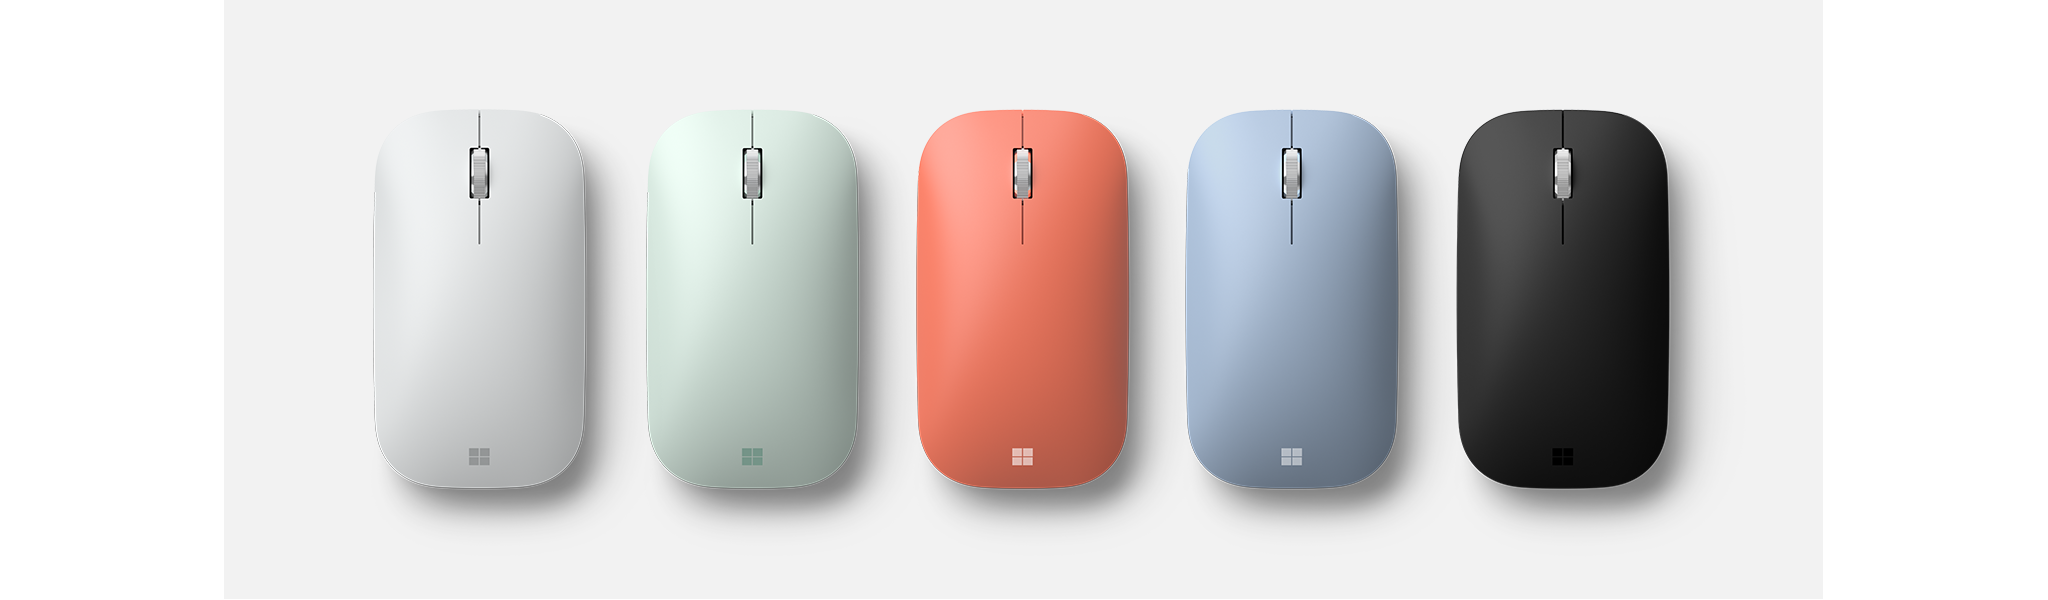 Microsoft Modern Mobile Mouse en distintos colores